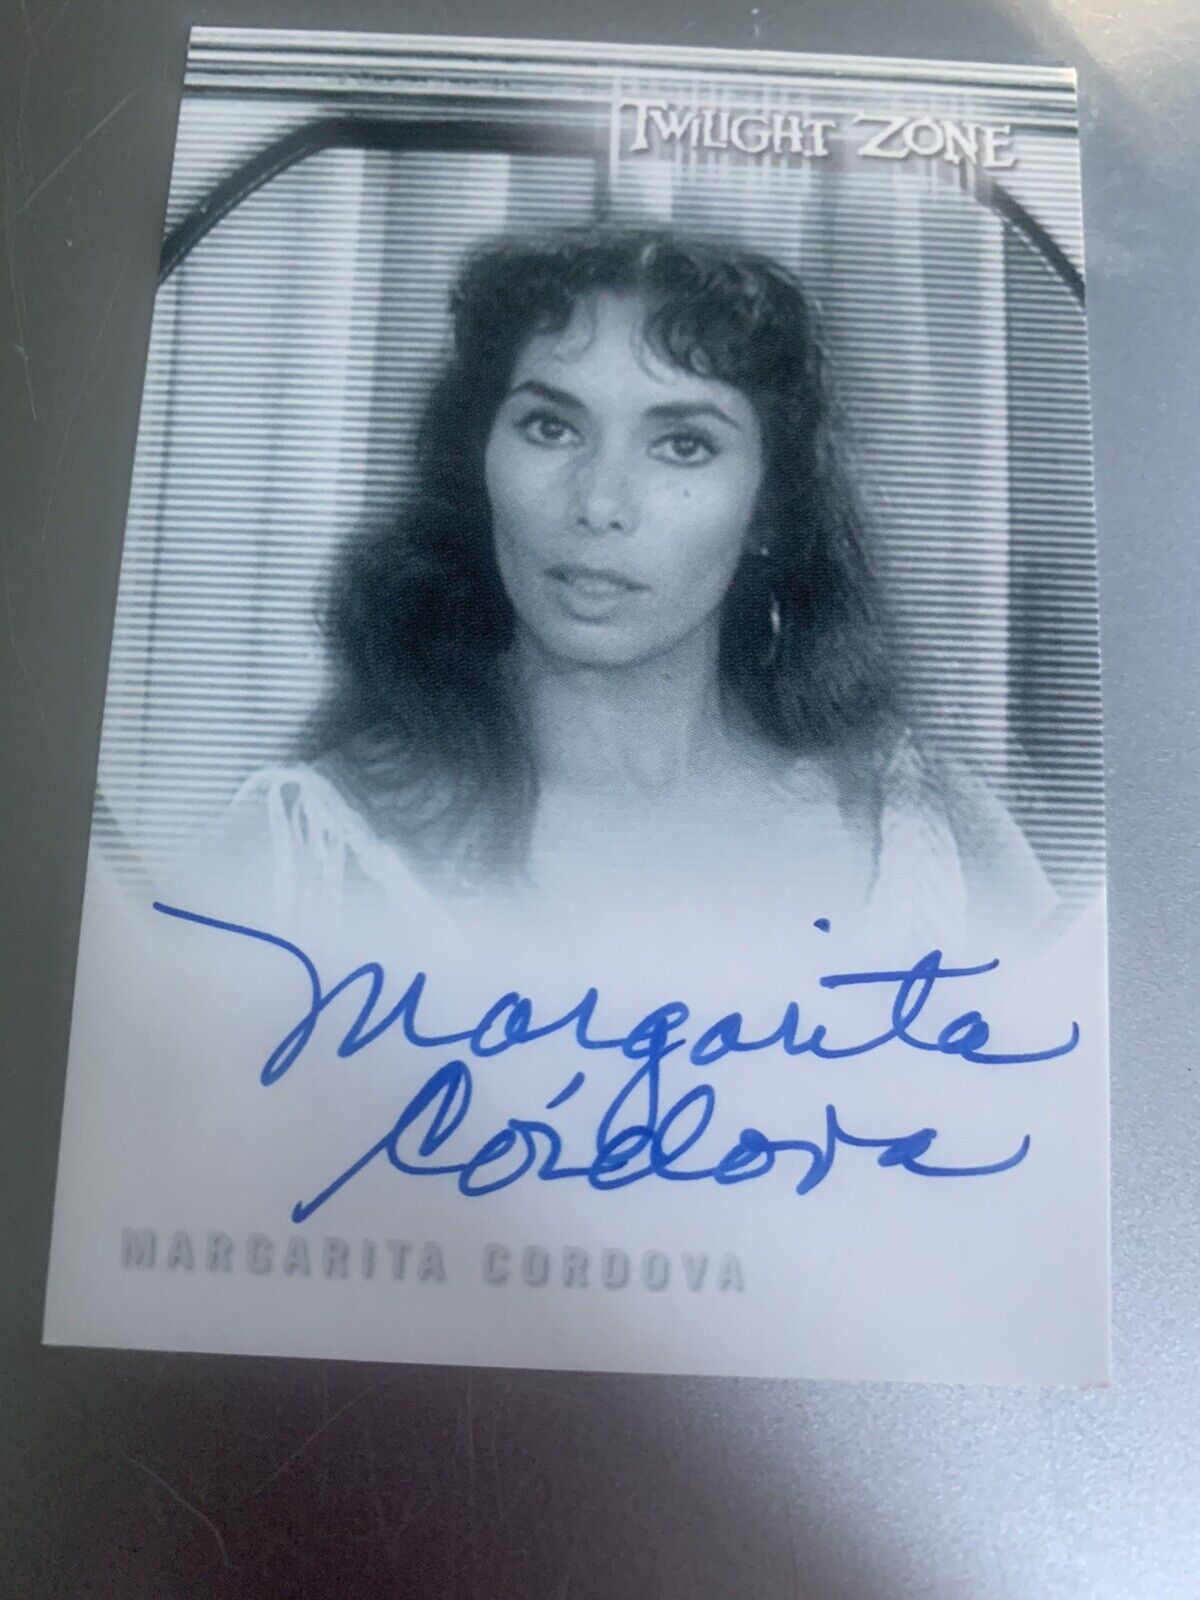 Twilight Zone Autograph Card Margarita Cordova A143